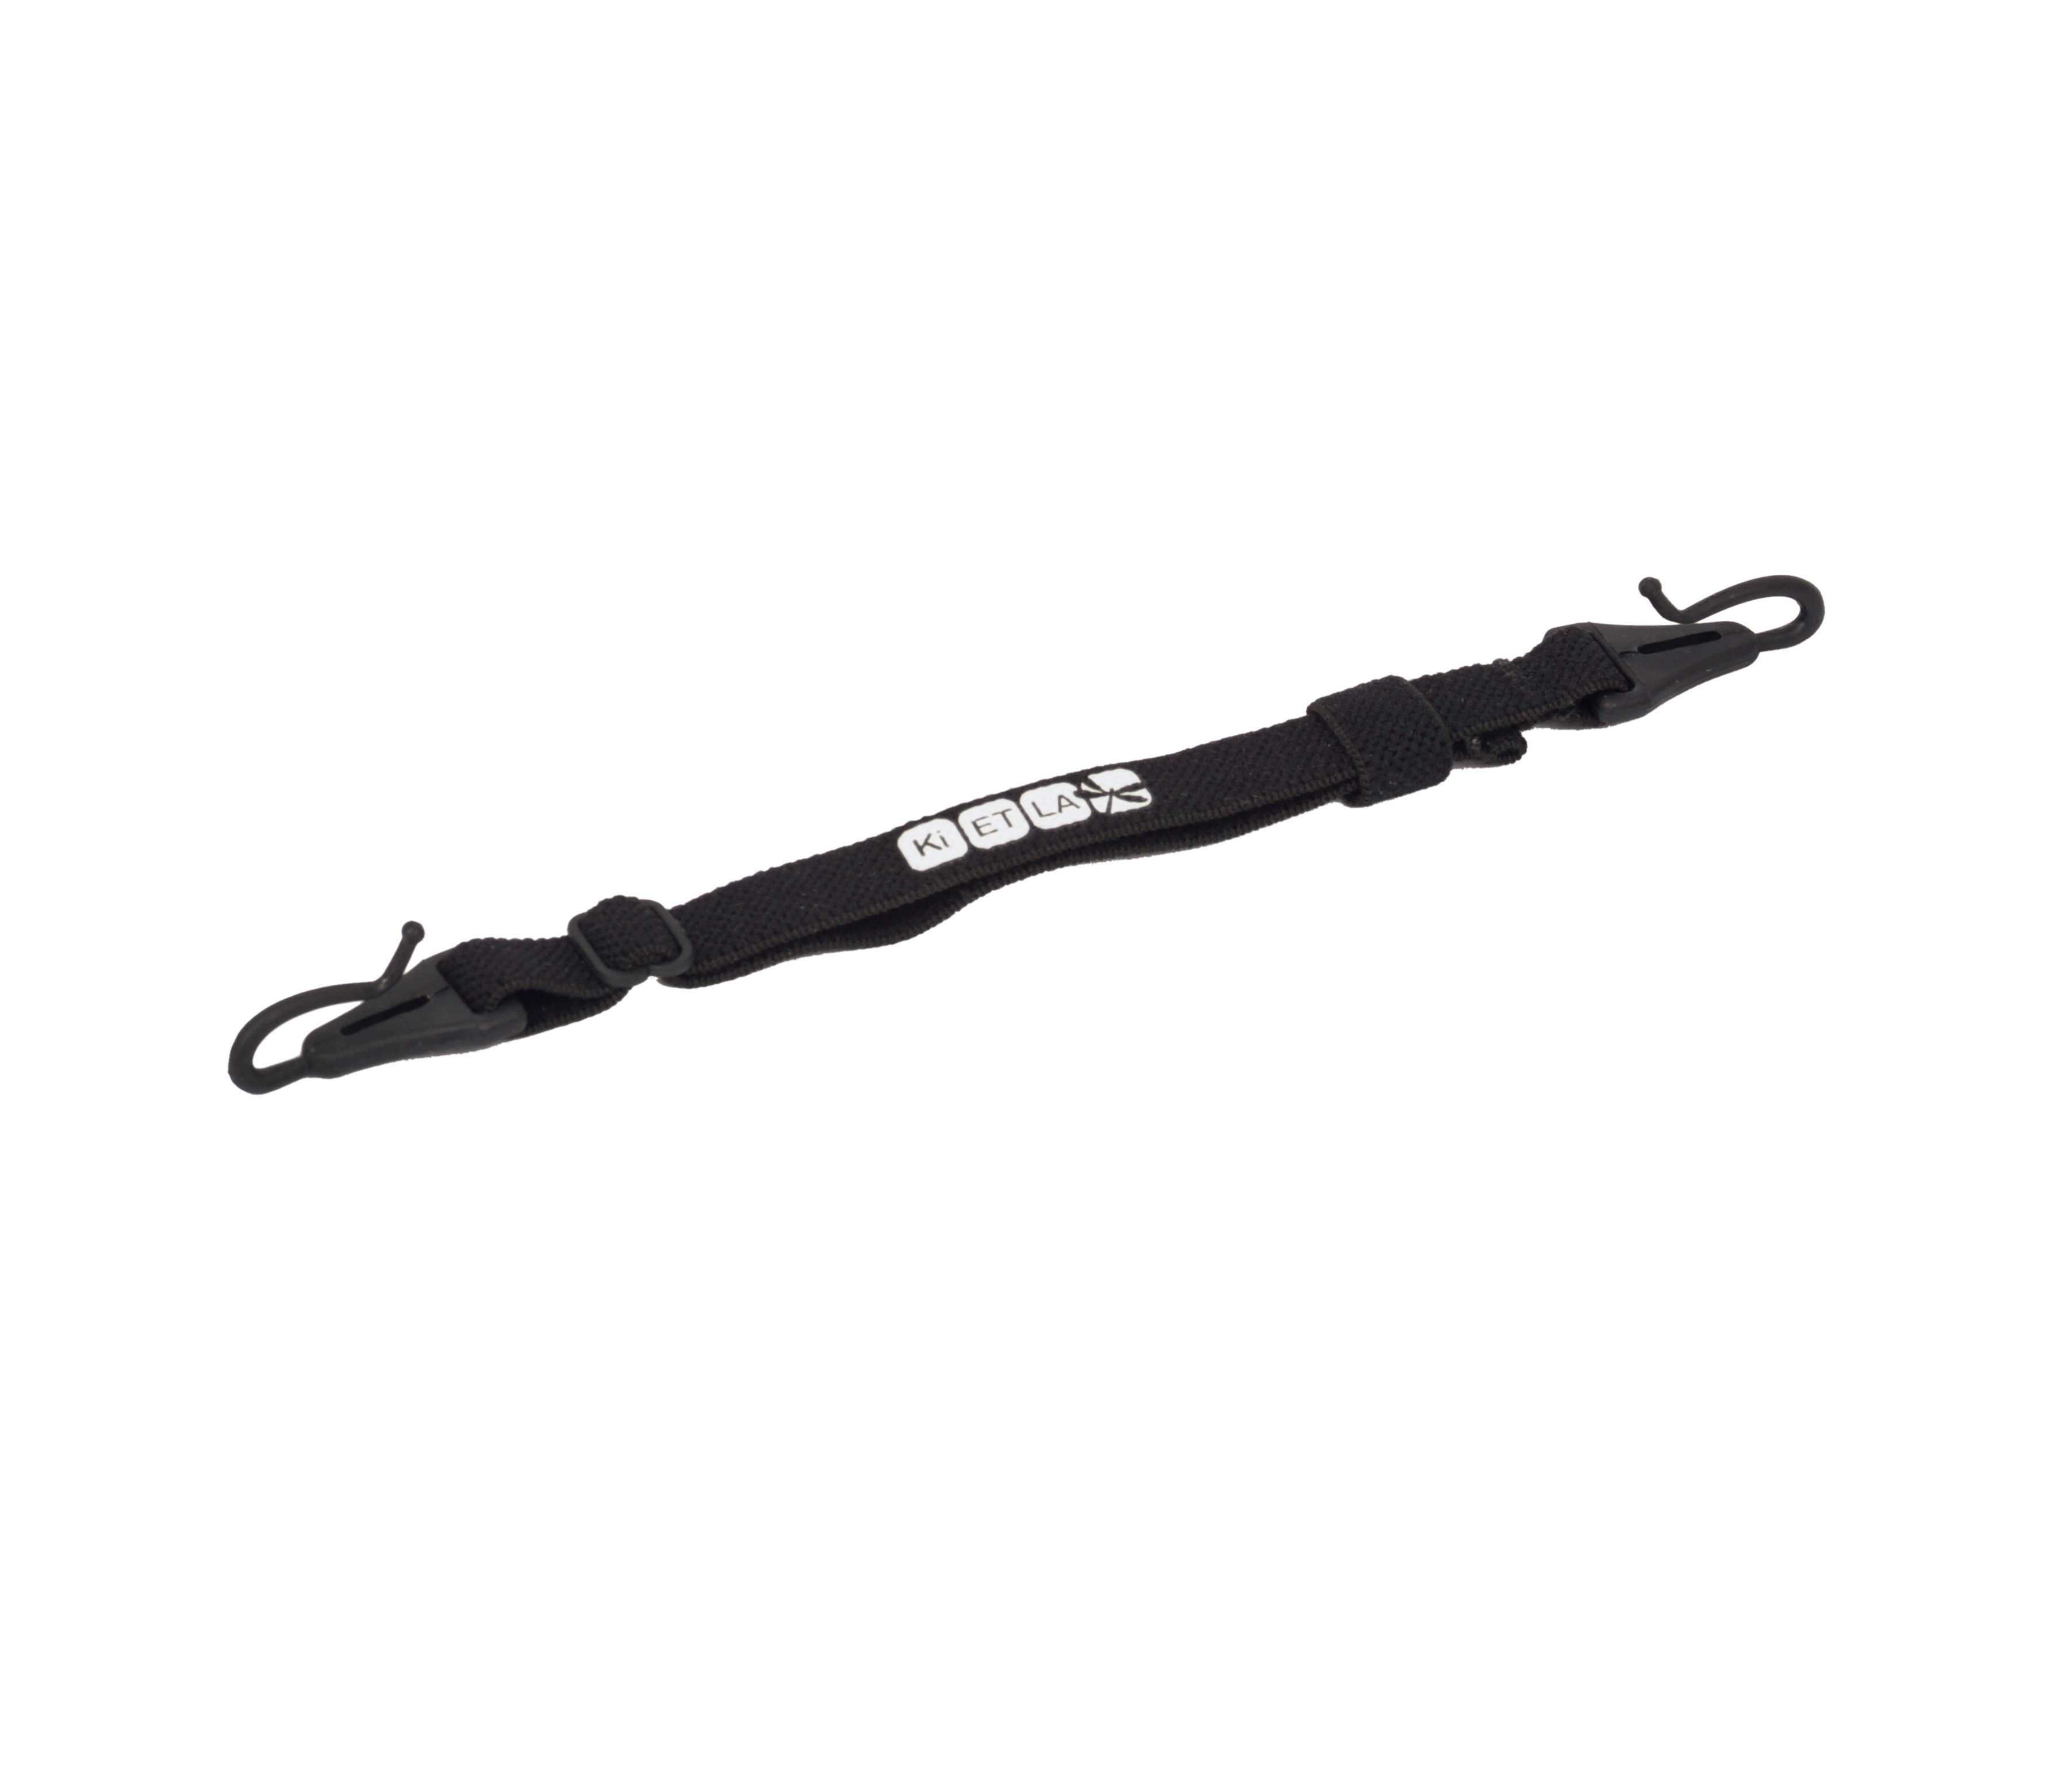 Ki ET LA Adjustable strap, black